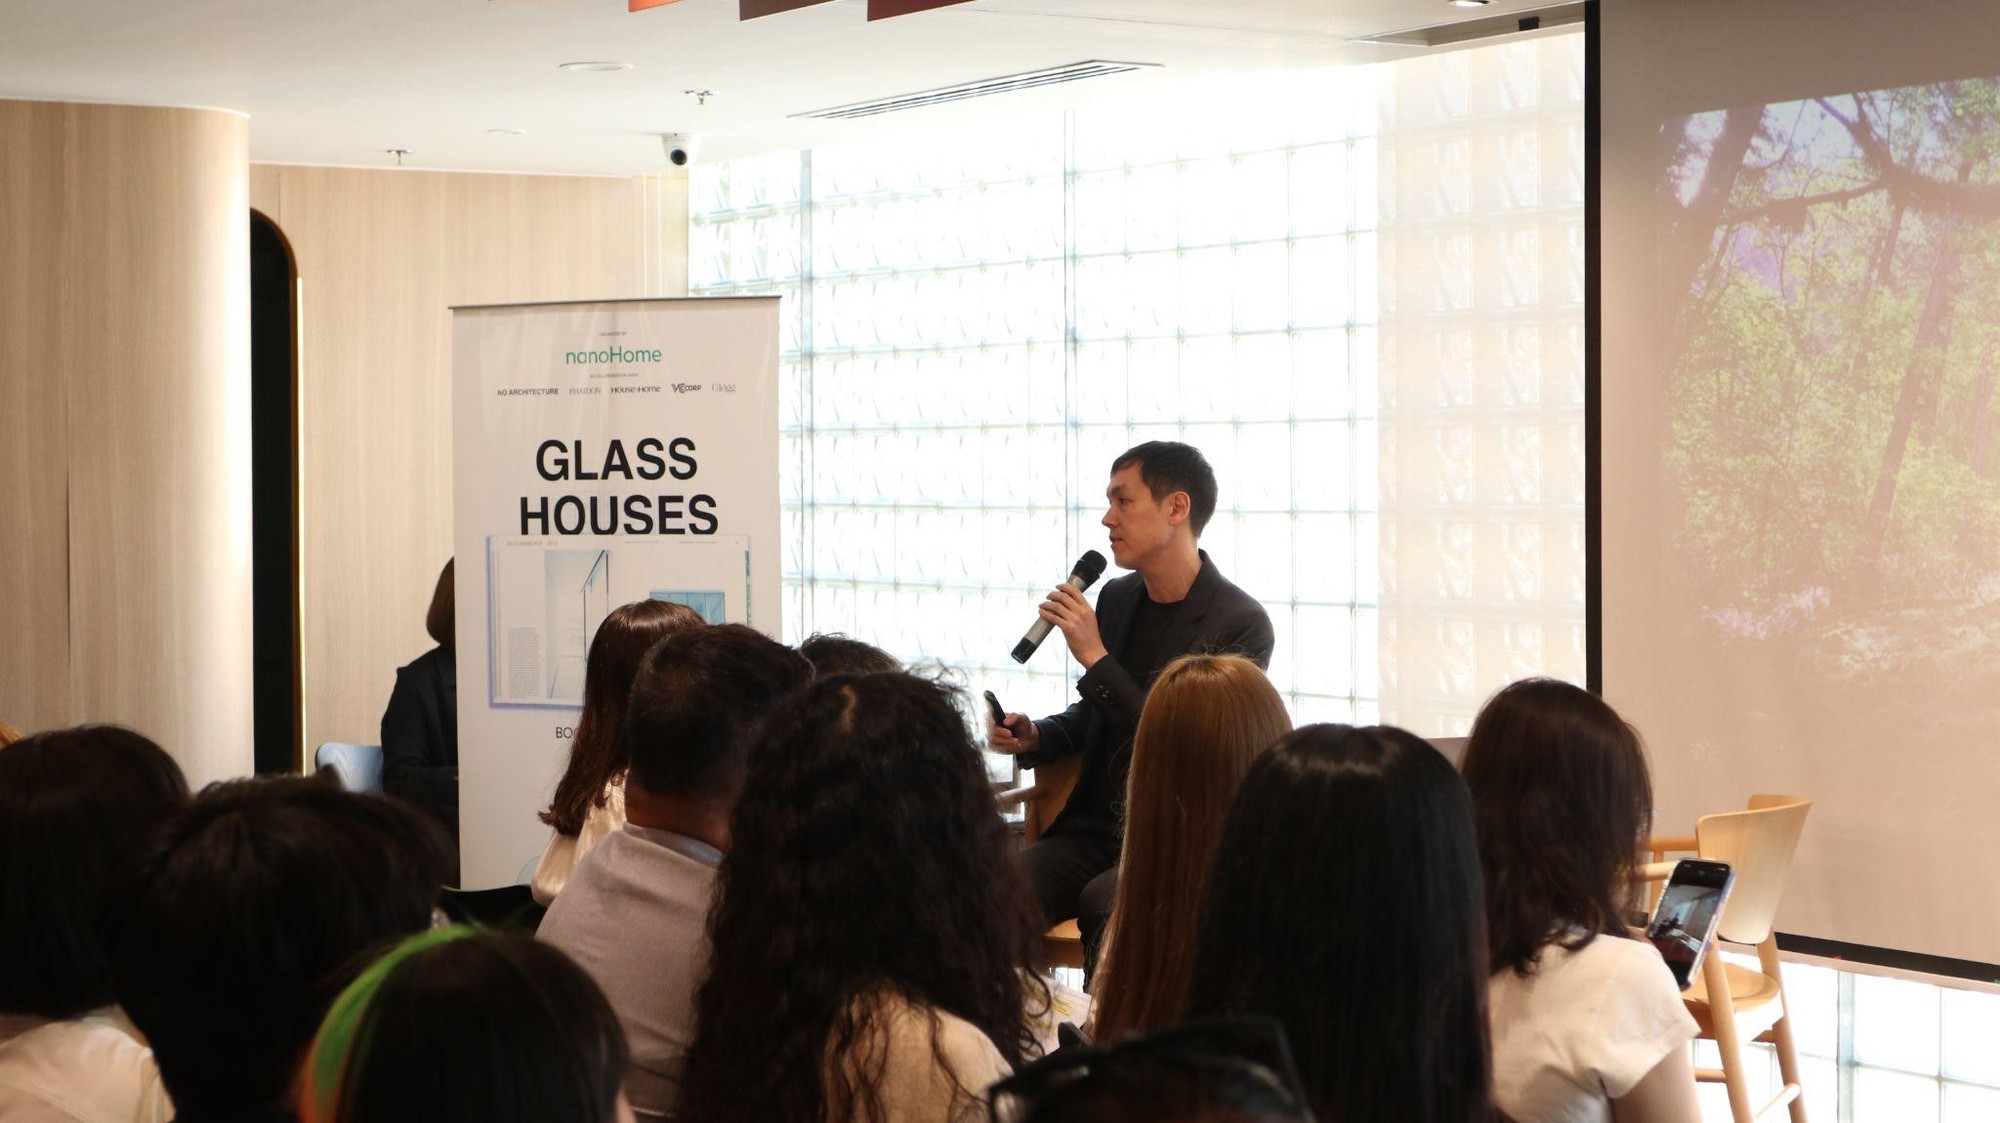 Sự kiện Khám phá kiến trúc Kính ‘Glass Houses’ và sự liên kết với Ánh sáng - Nội thất cùng Nhà phê bình kiến trúc Andrew Heid và nanoHome  - Ảnh 1.